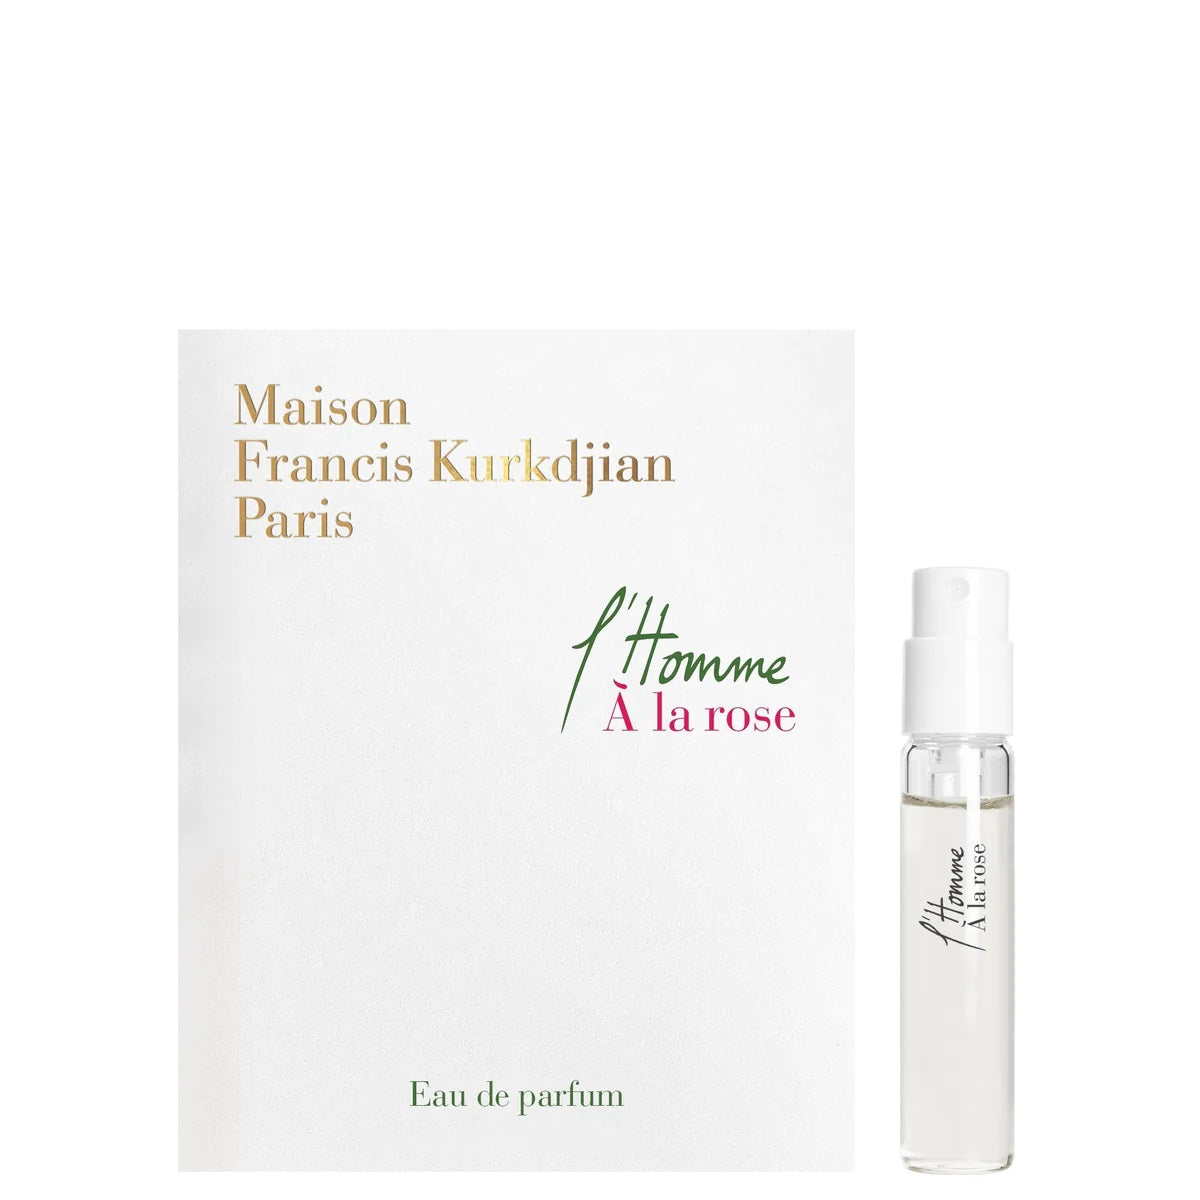 Maison Francis Kurkdjian L'Homme A la Rose 2 ml 0.06 fl. oz. officielle duftprøver